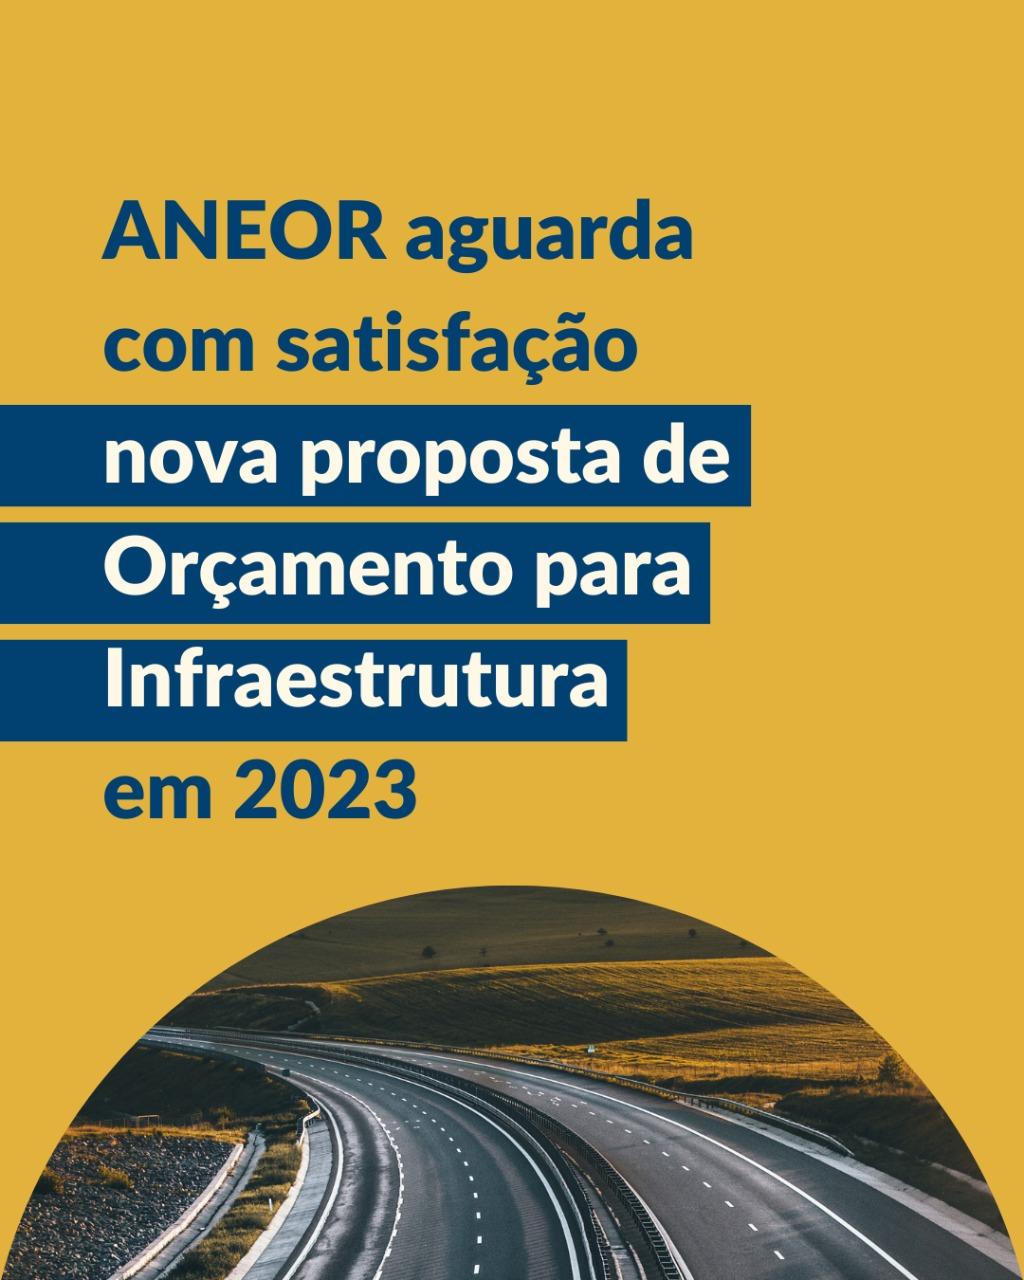 ANEOR AGUARDA COM SATISFAÇÃO NOVA PROPOSTA DE ORÇAMENTO PARA INFRAESTRUTURA EM 2023